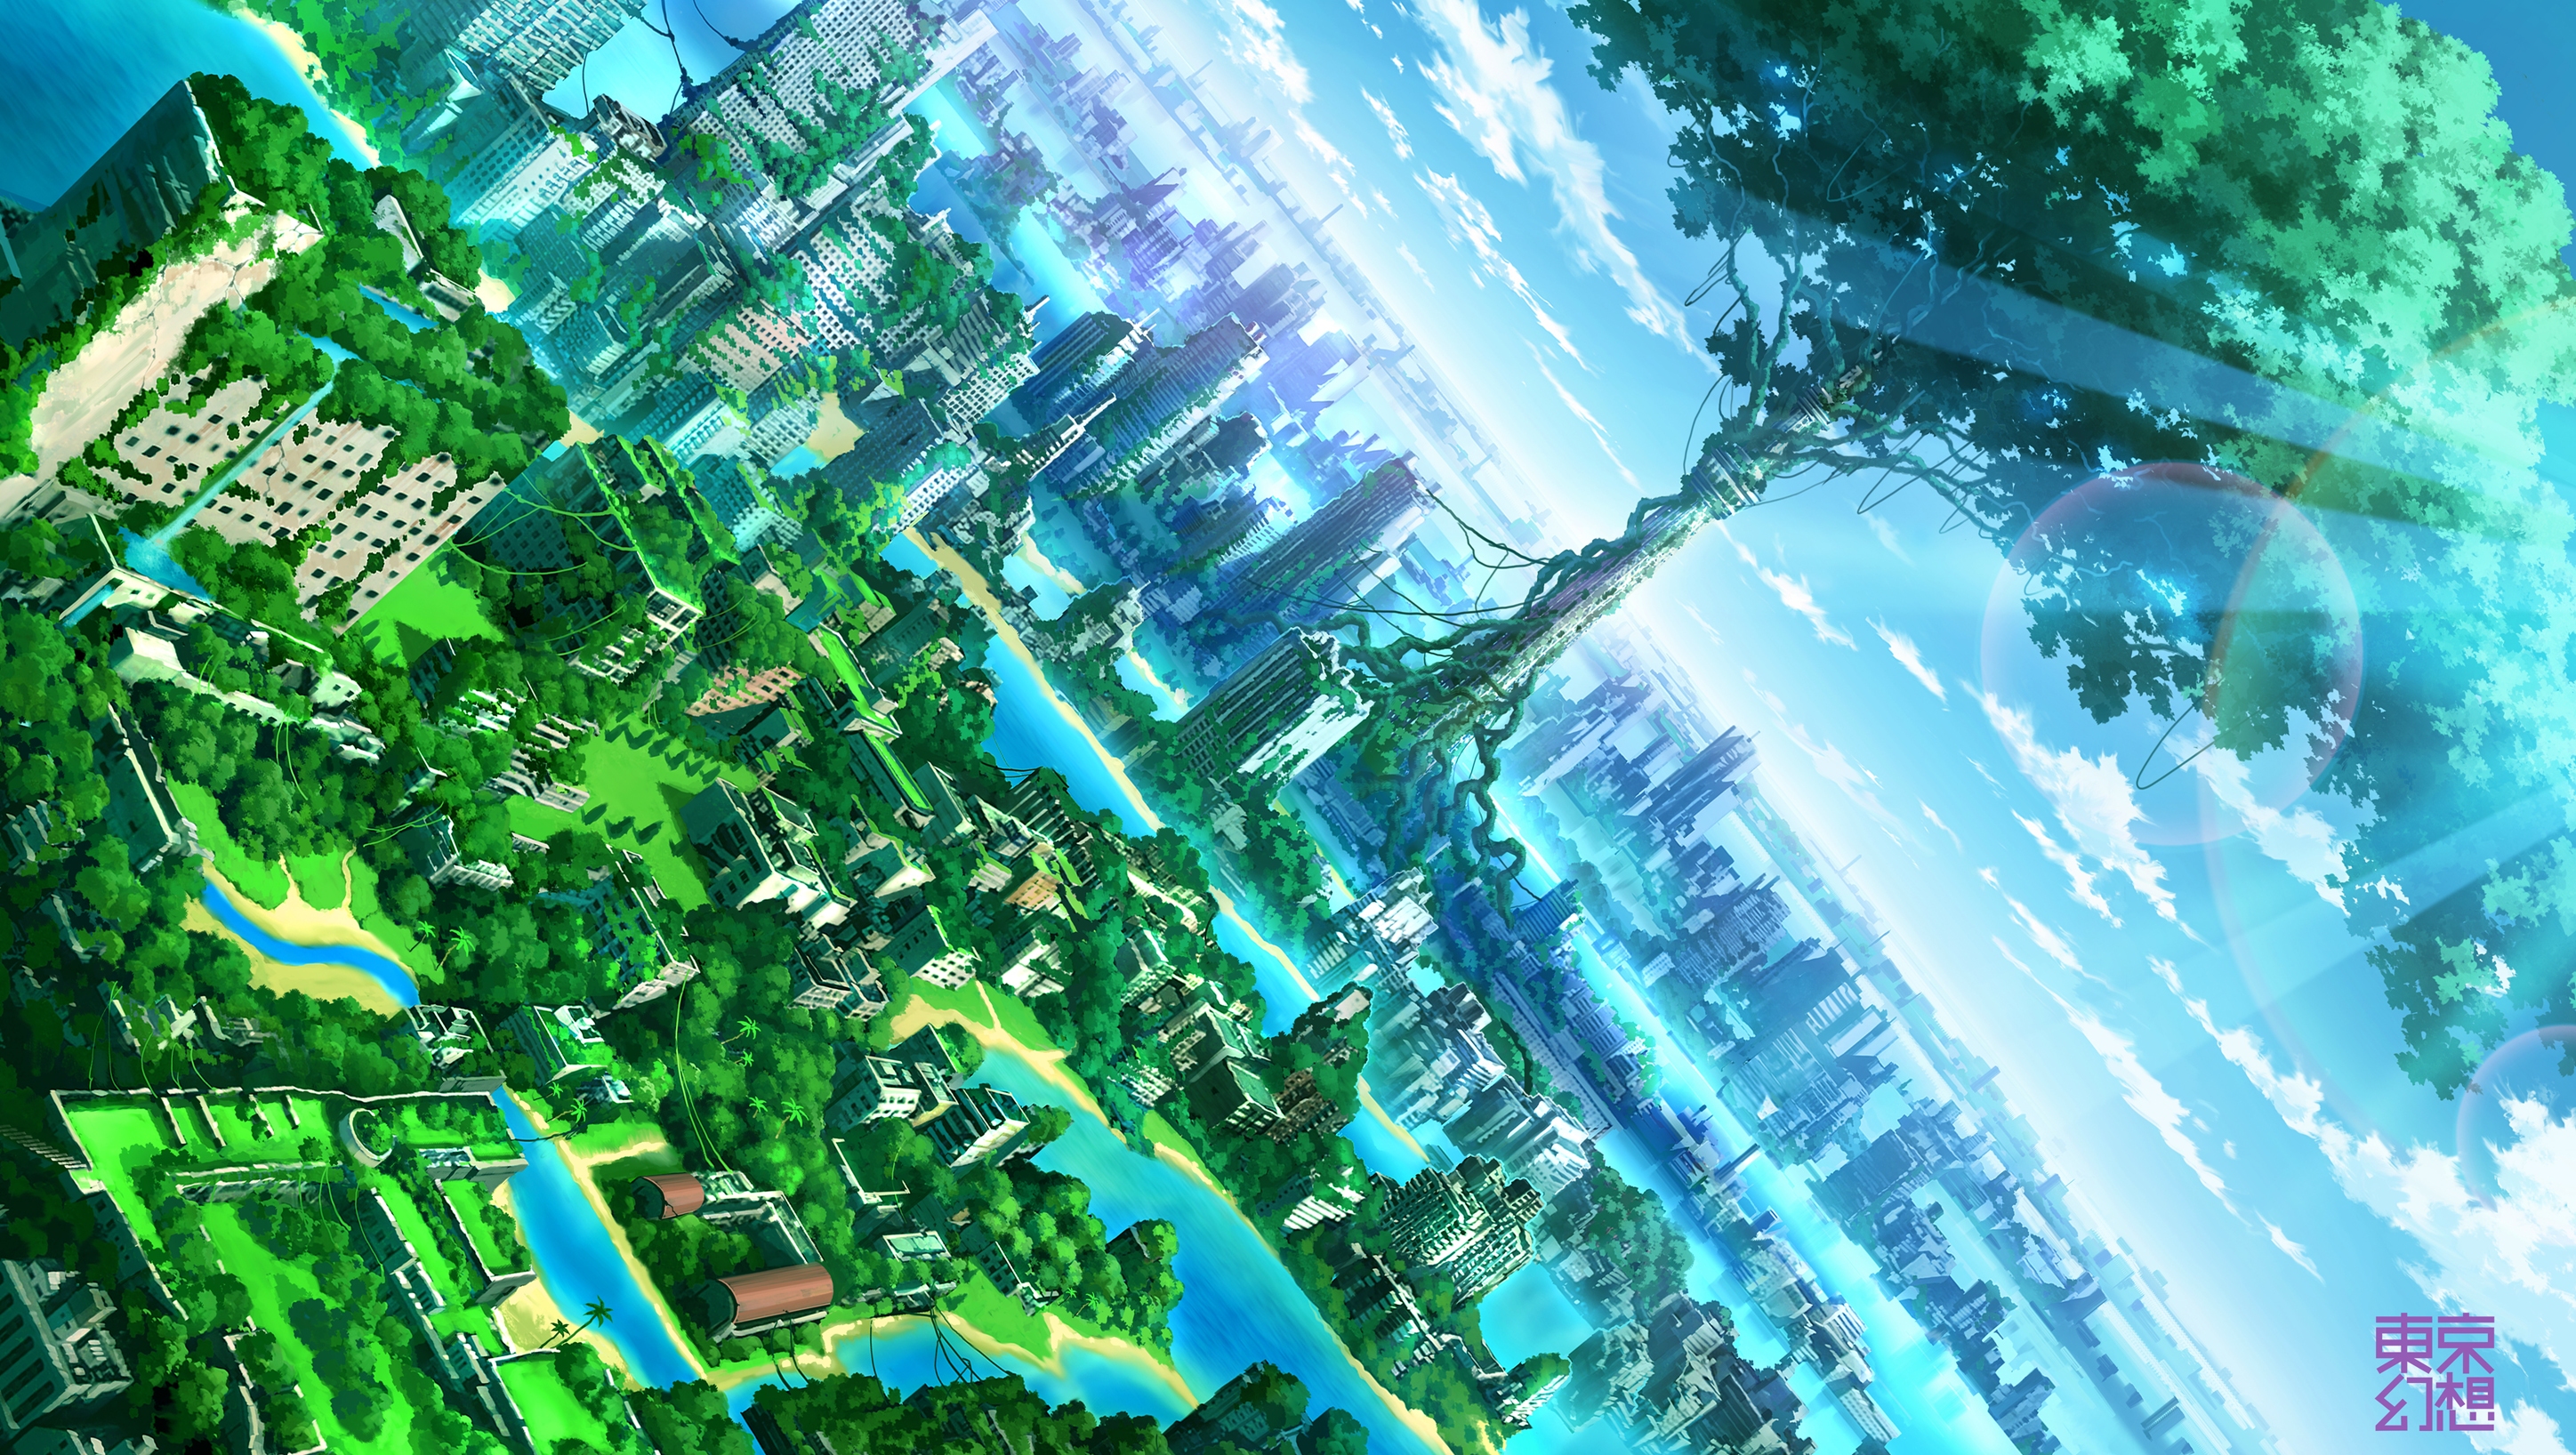 Anime Landscape Wallpaper HD | PixelsTalk.Net